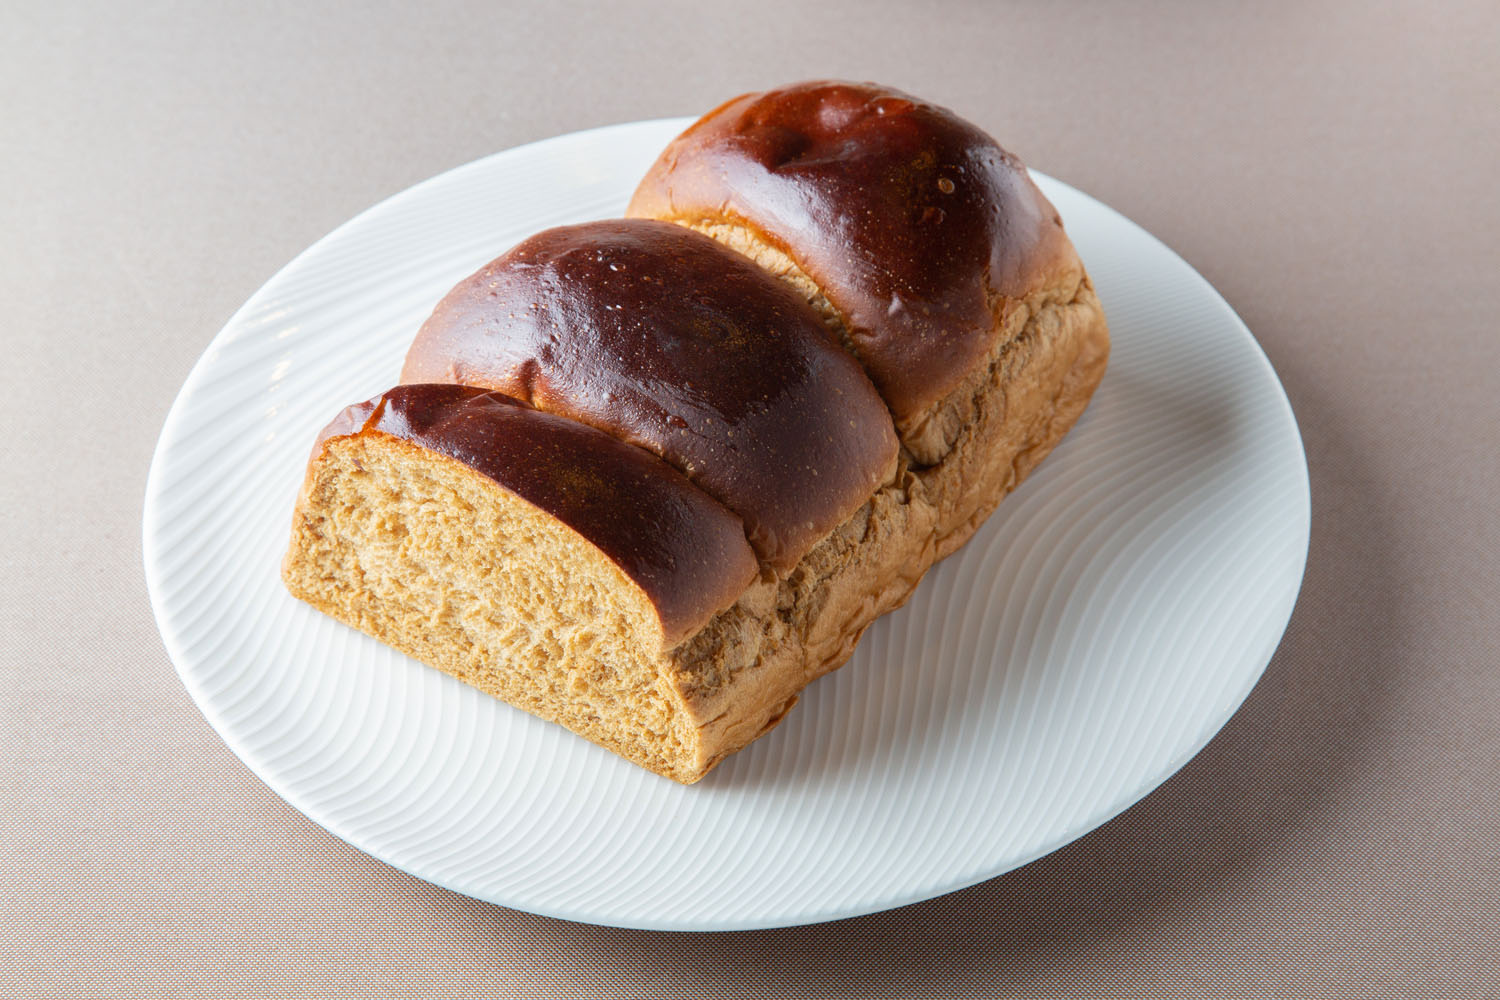 黒糖食パン1斤550円。北海道産強力粉を使ったふわふわの軽い食感。黒糖がほんのり香る。